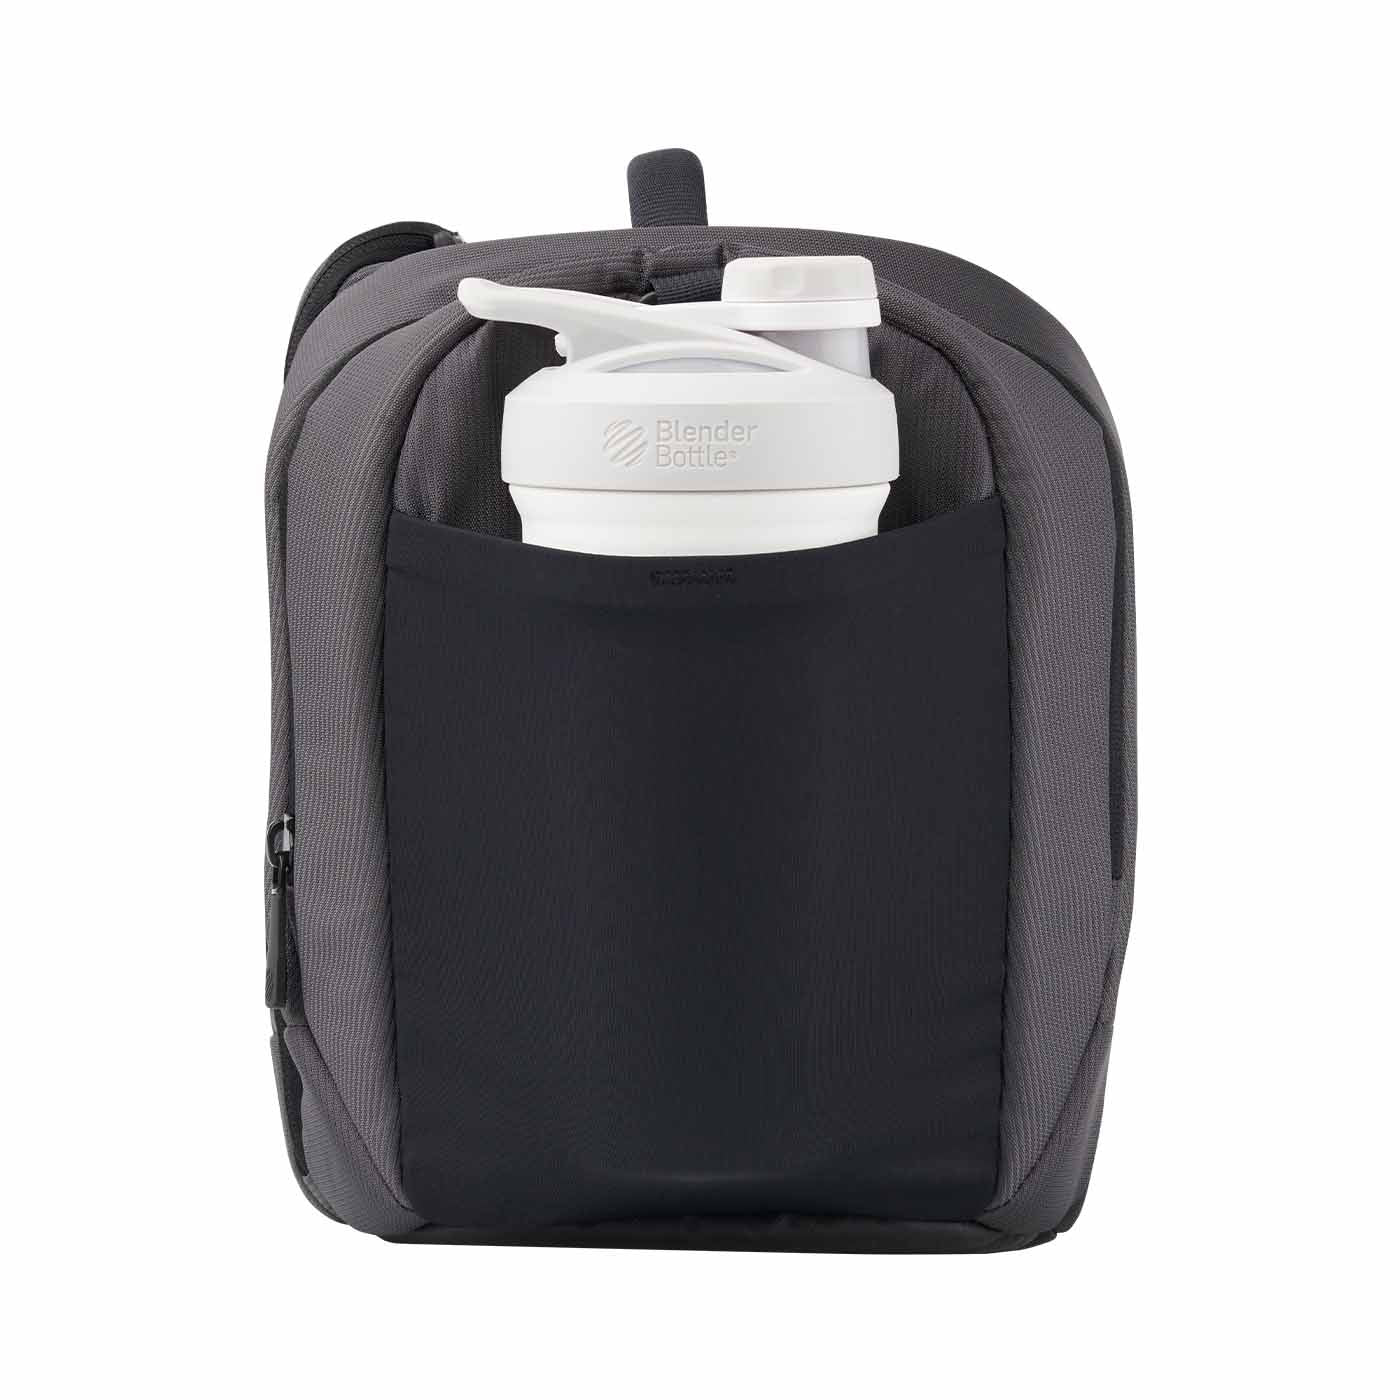 Blender Bottle Cooling Compartment Meal Prep Bag - 3 Meal - Gray